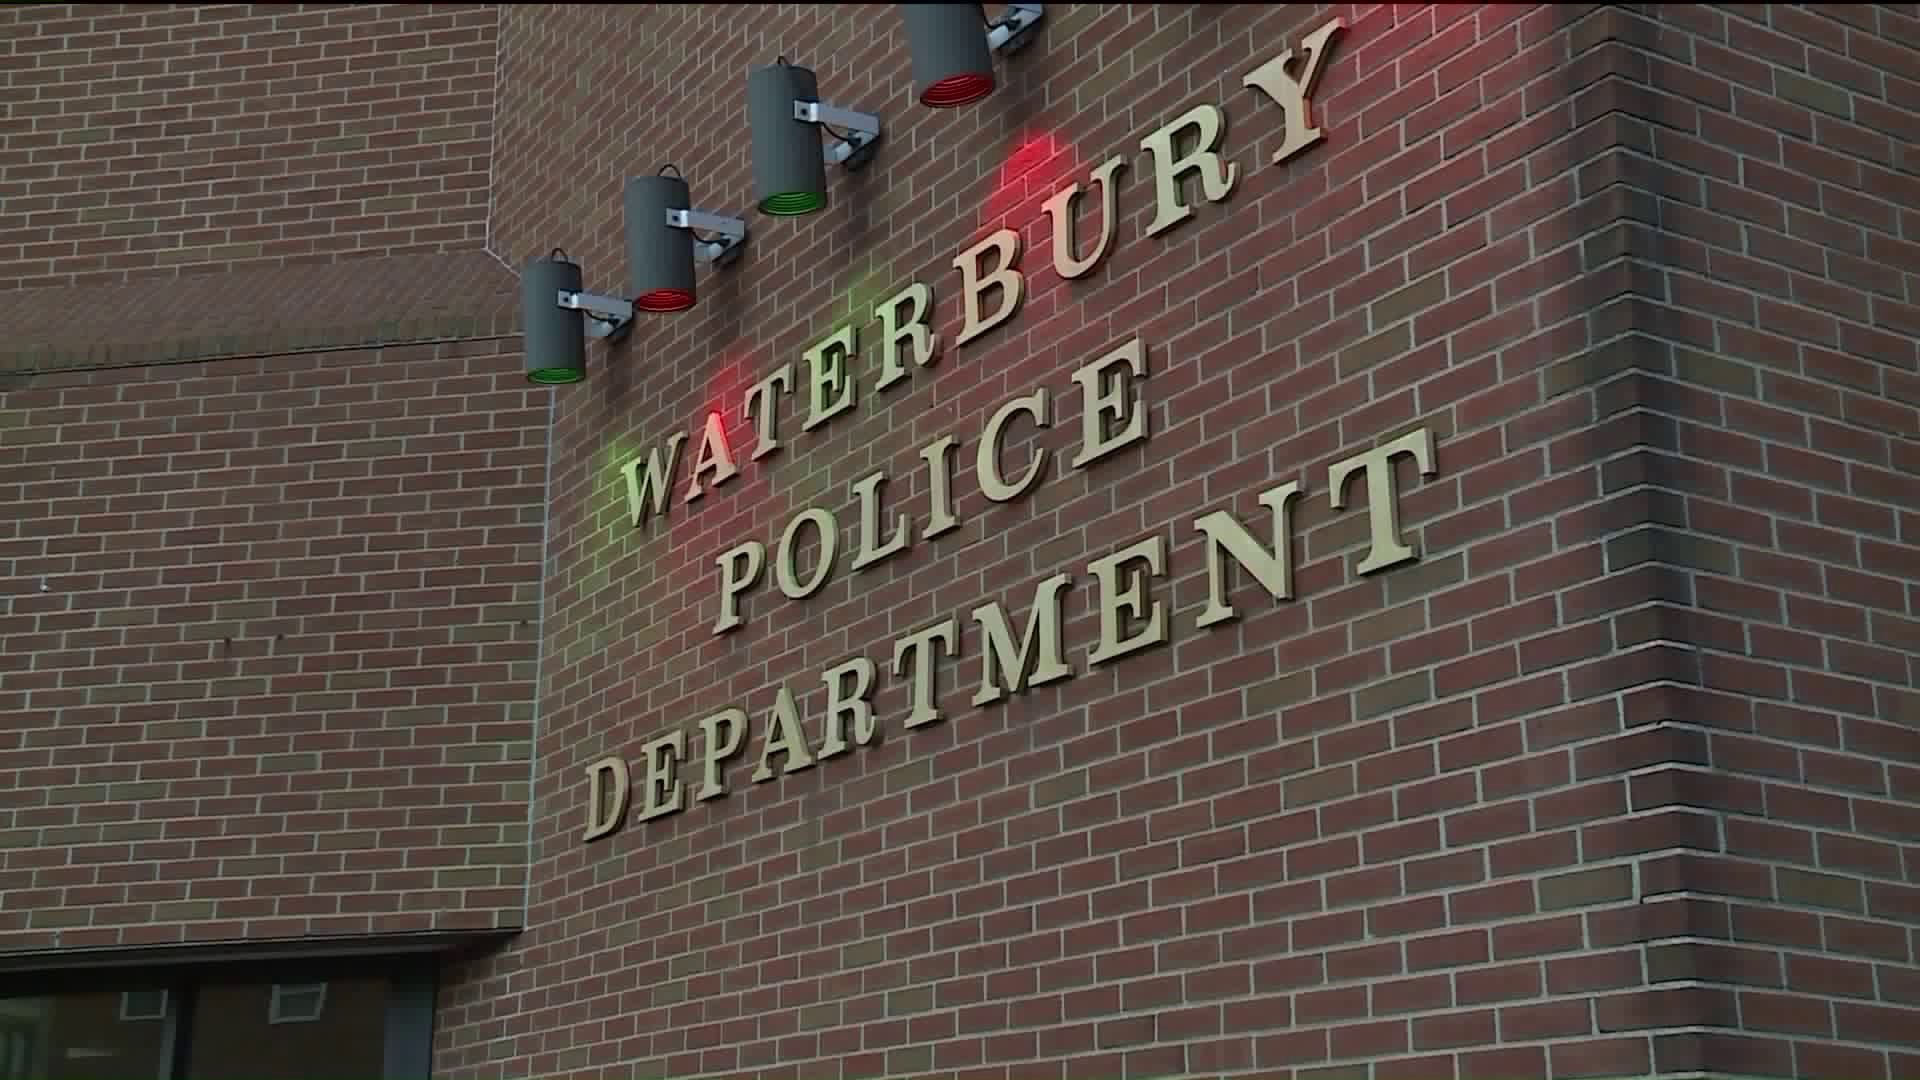 Waterbury hit-and-run